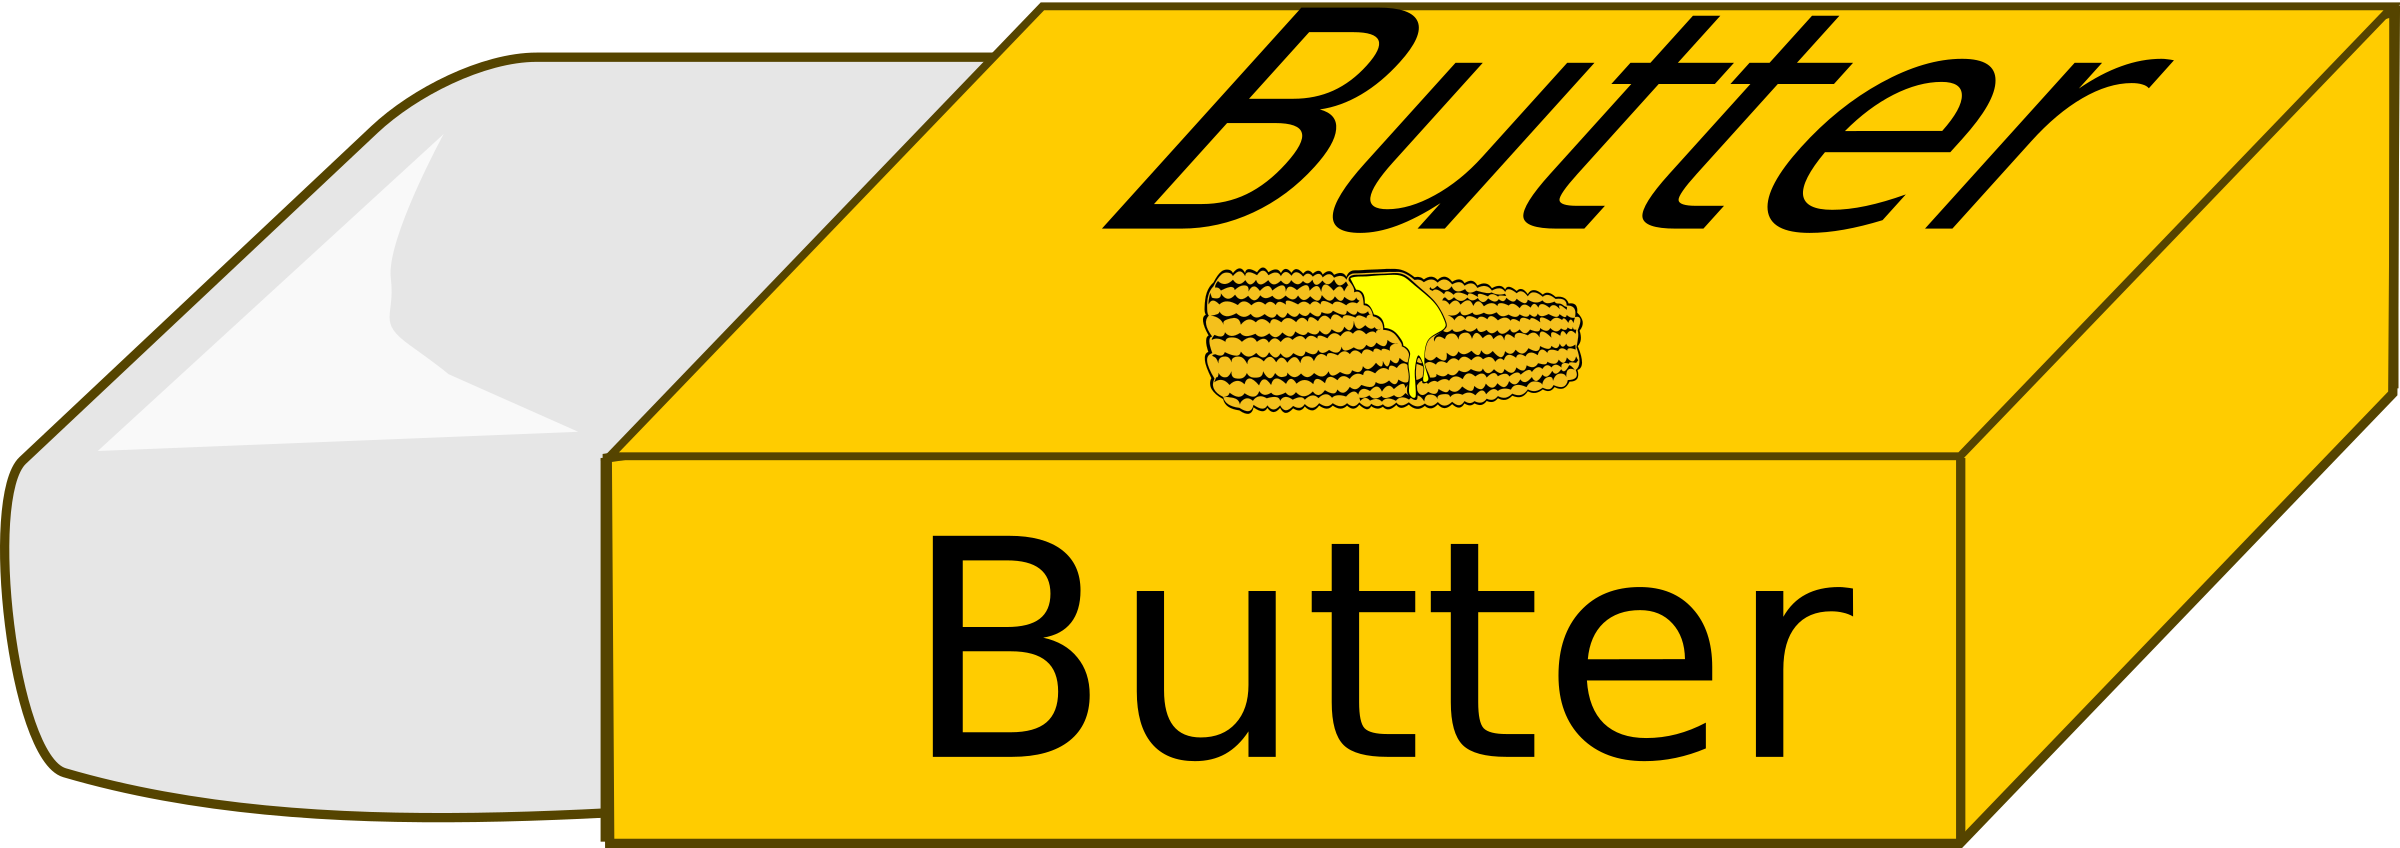 butter clipart cute